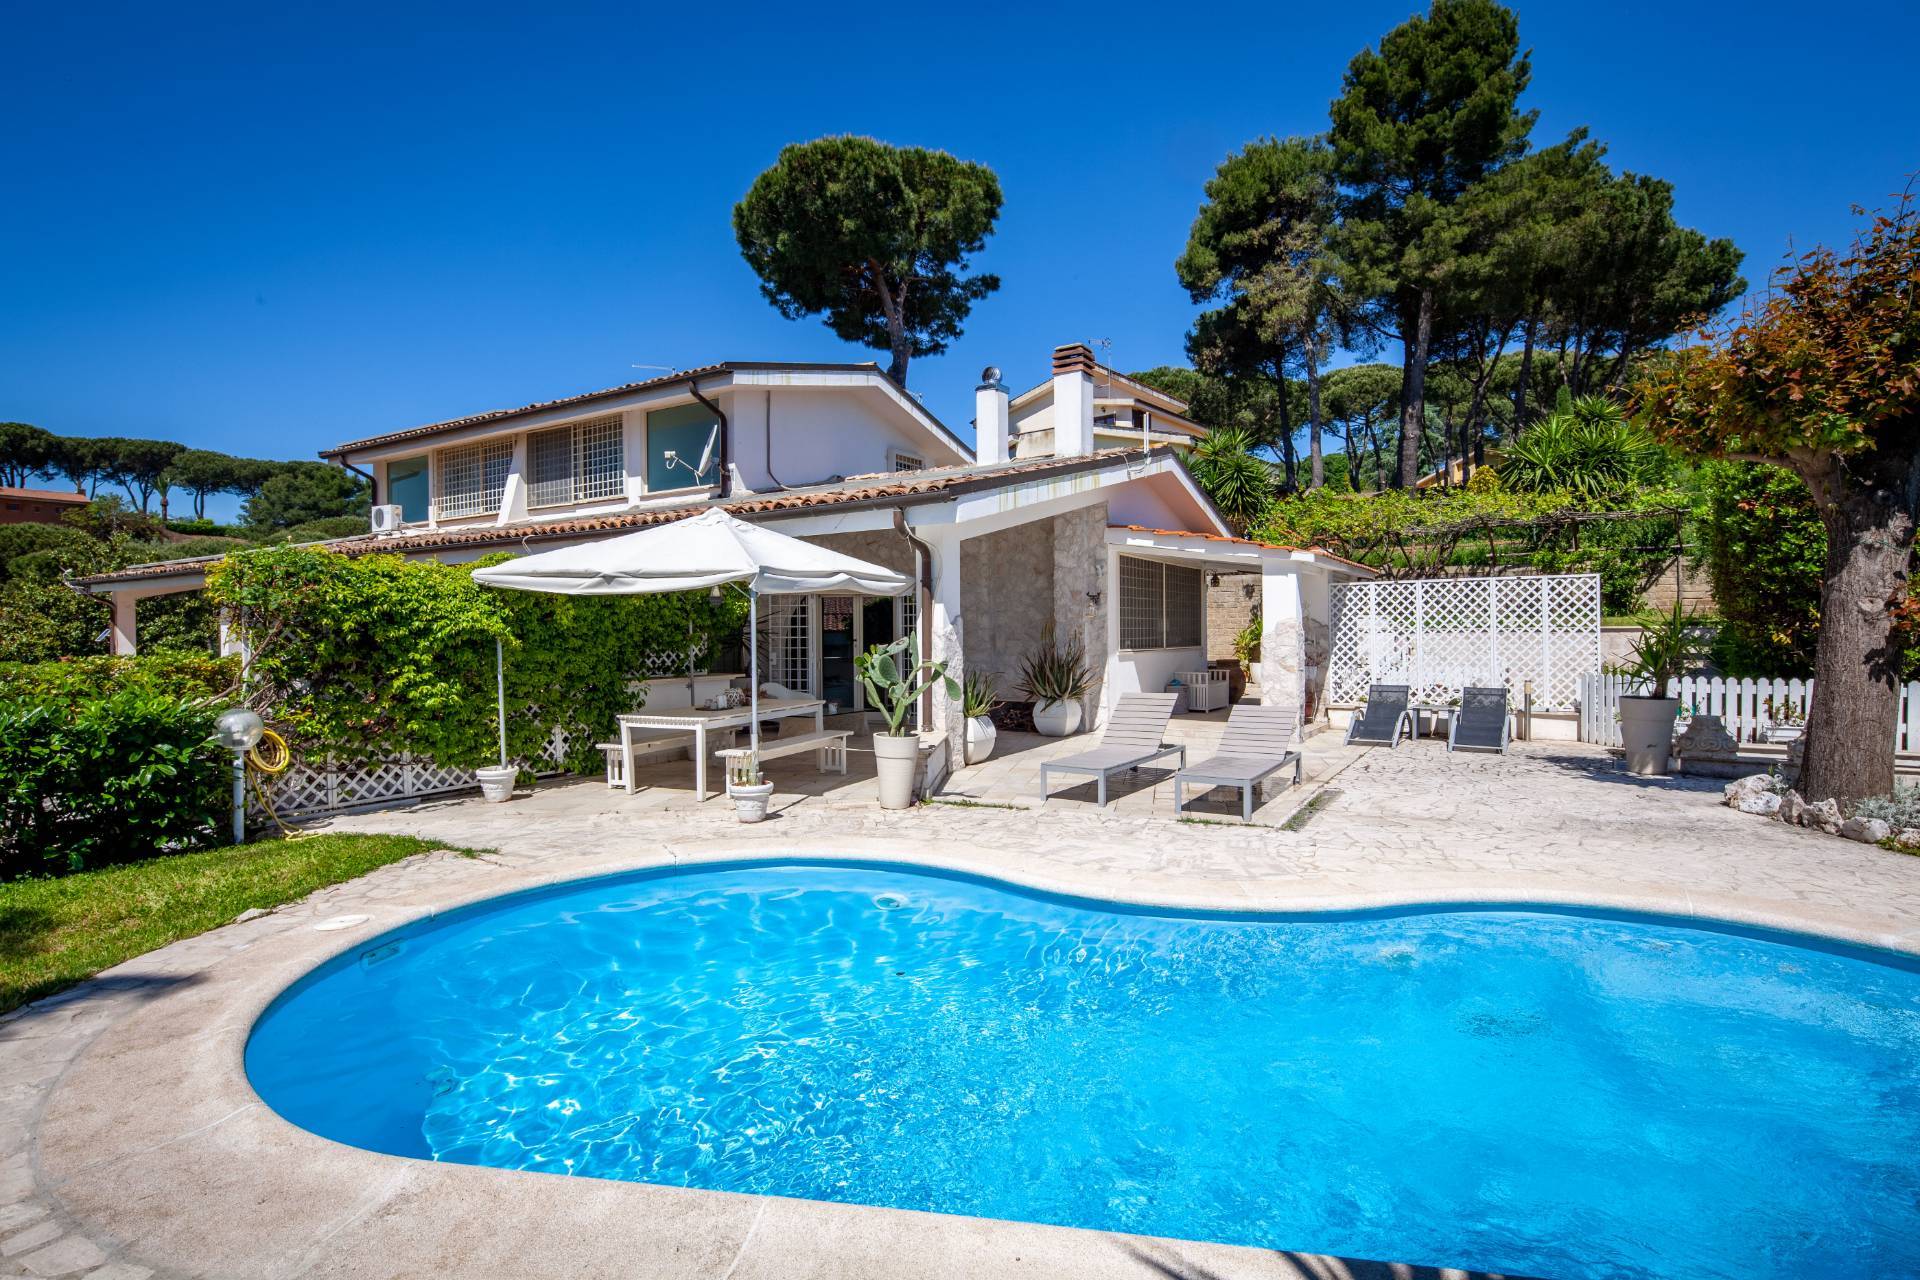 Villa in vendita a Castelnuovo di Porto, 8 locali, prezzo € 370.000 | CambioCasa.it